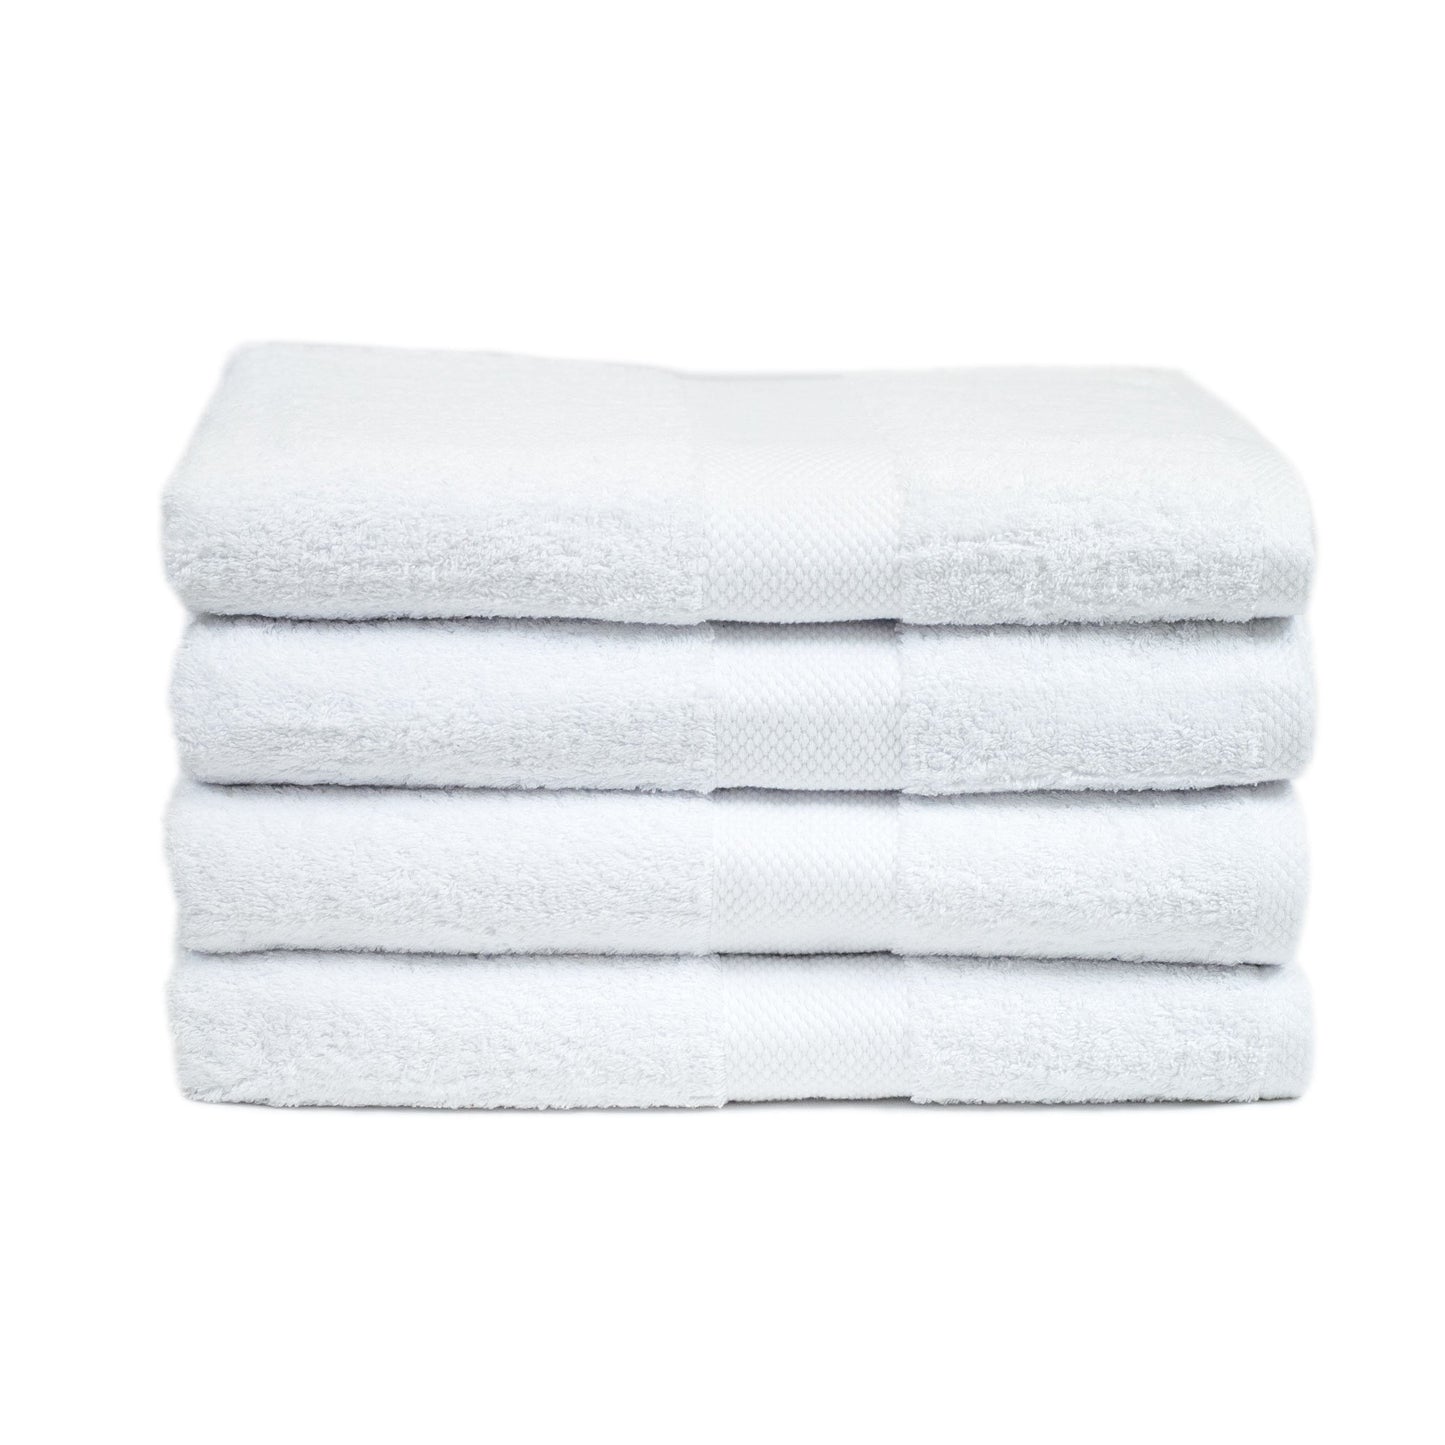 100% Cotton, Bath Towel Pack, 4 Pieces, 31" X 59", Premium Hotel Spa